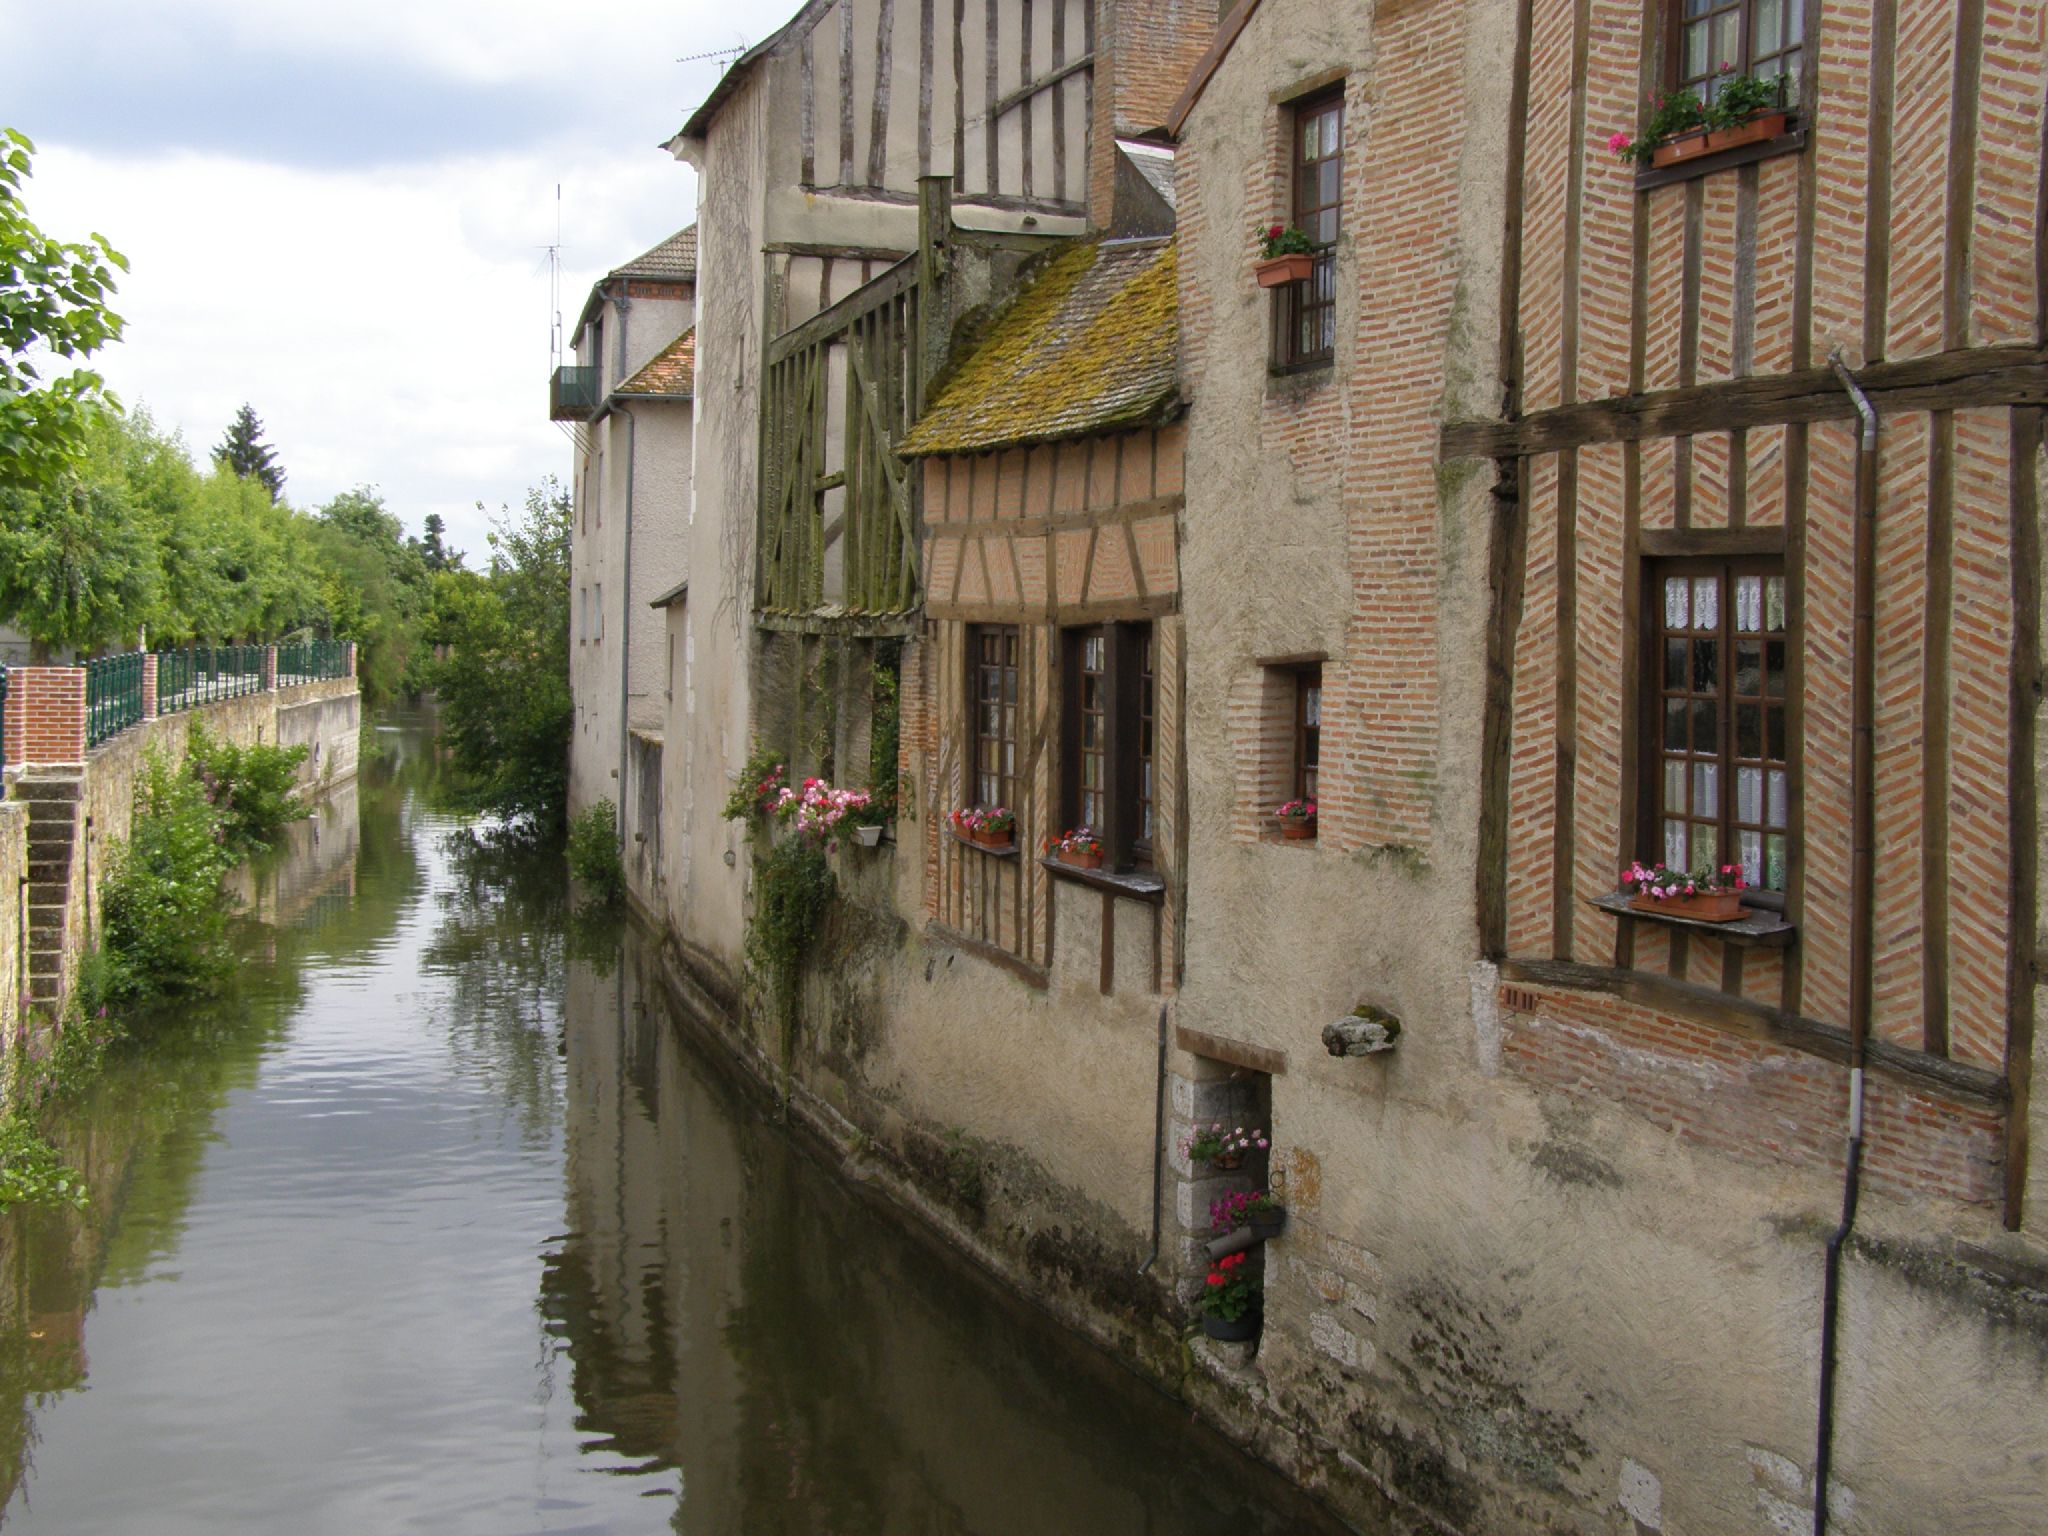 a narrow, river runs between several buildings